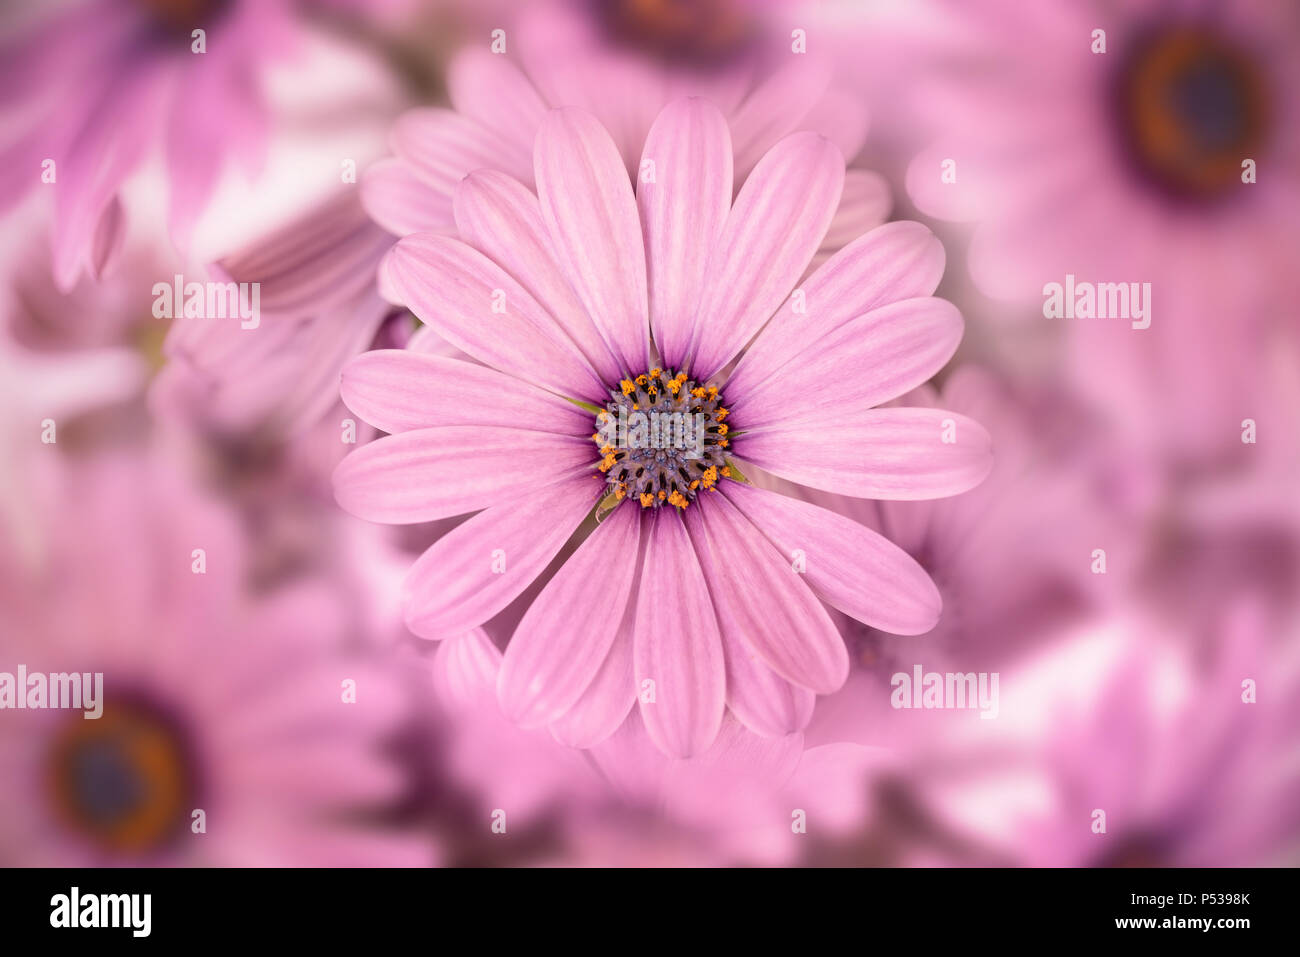 Vue de dessus d'un africain rose (Daisy) osteopermum close up Banque D'Images